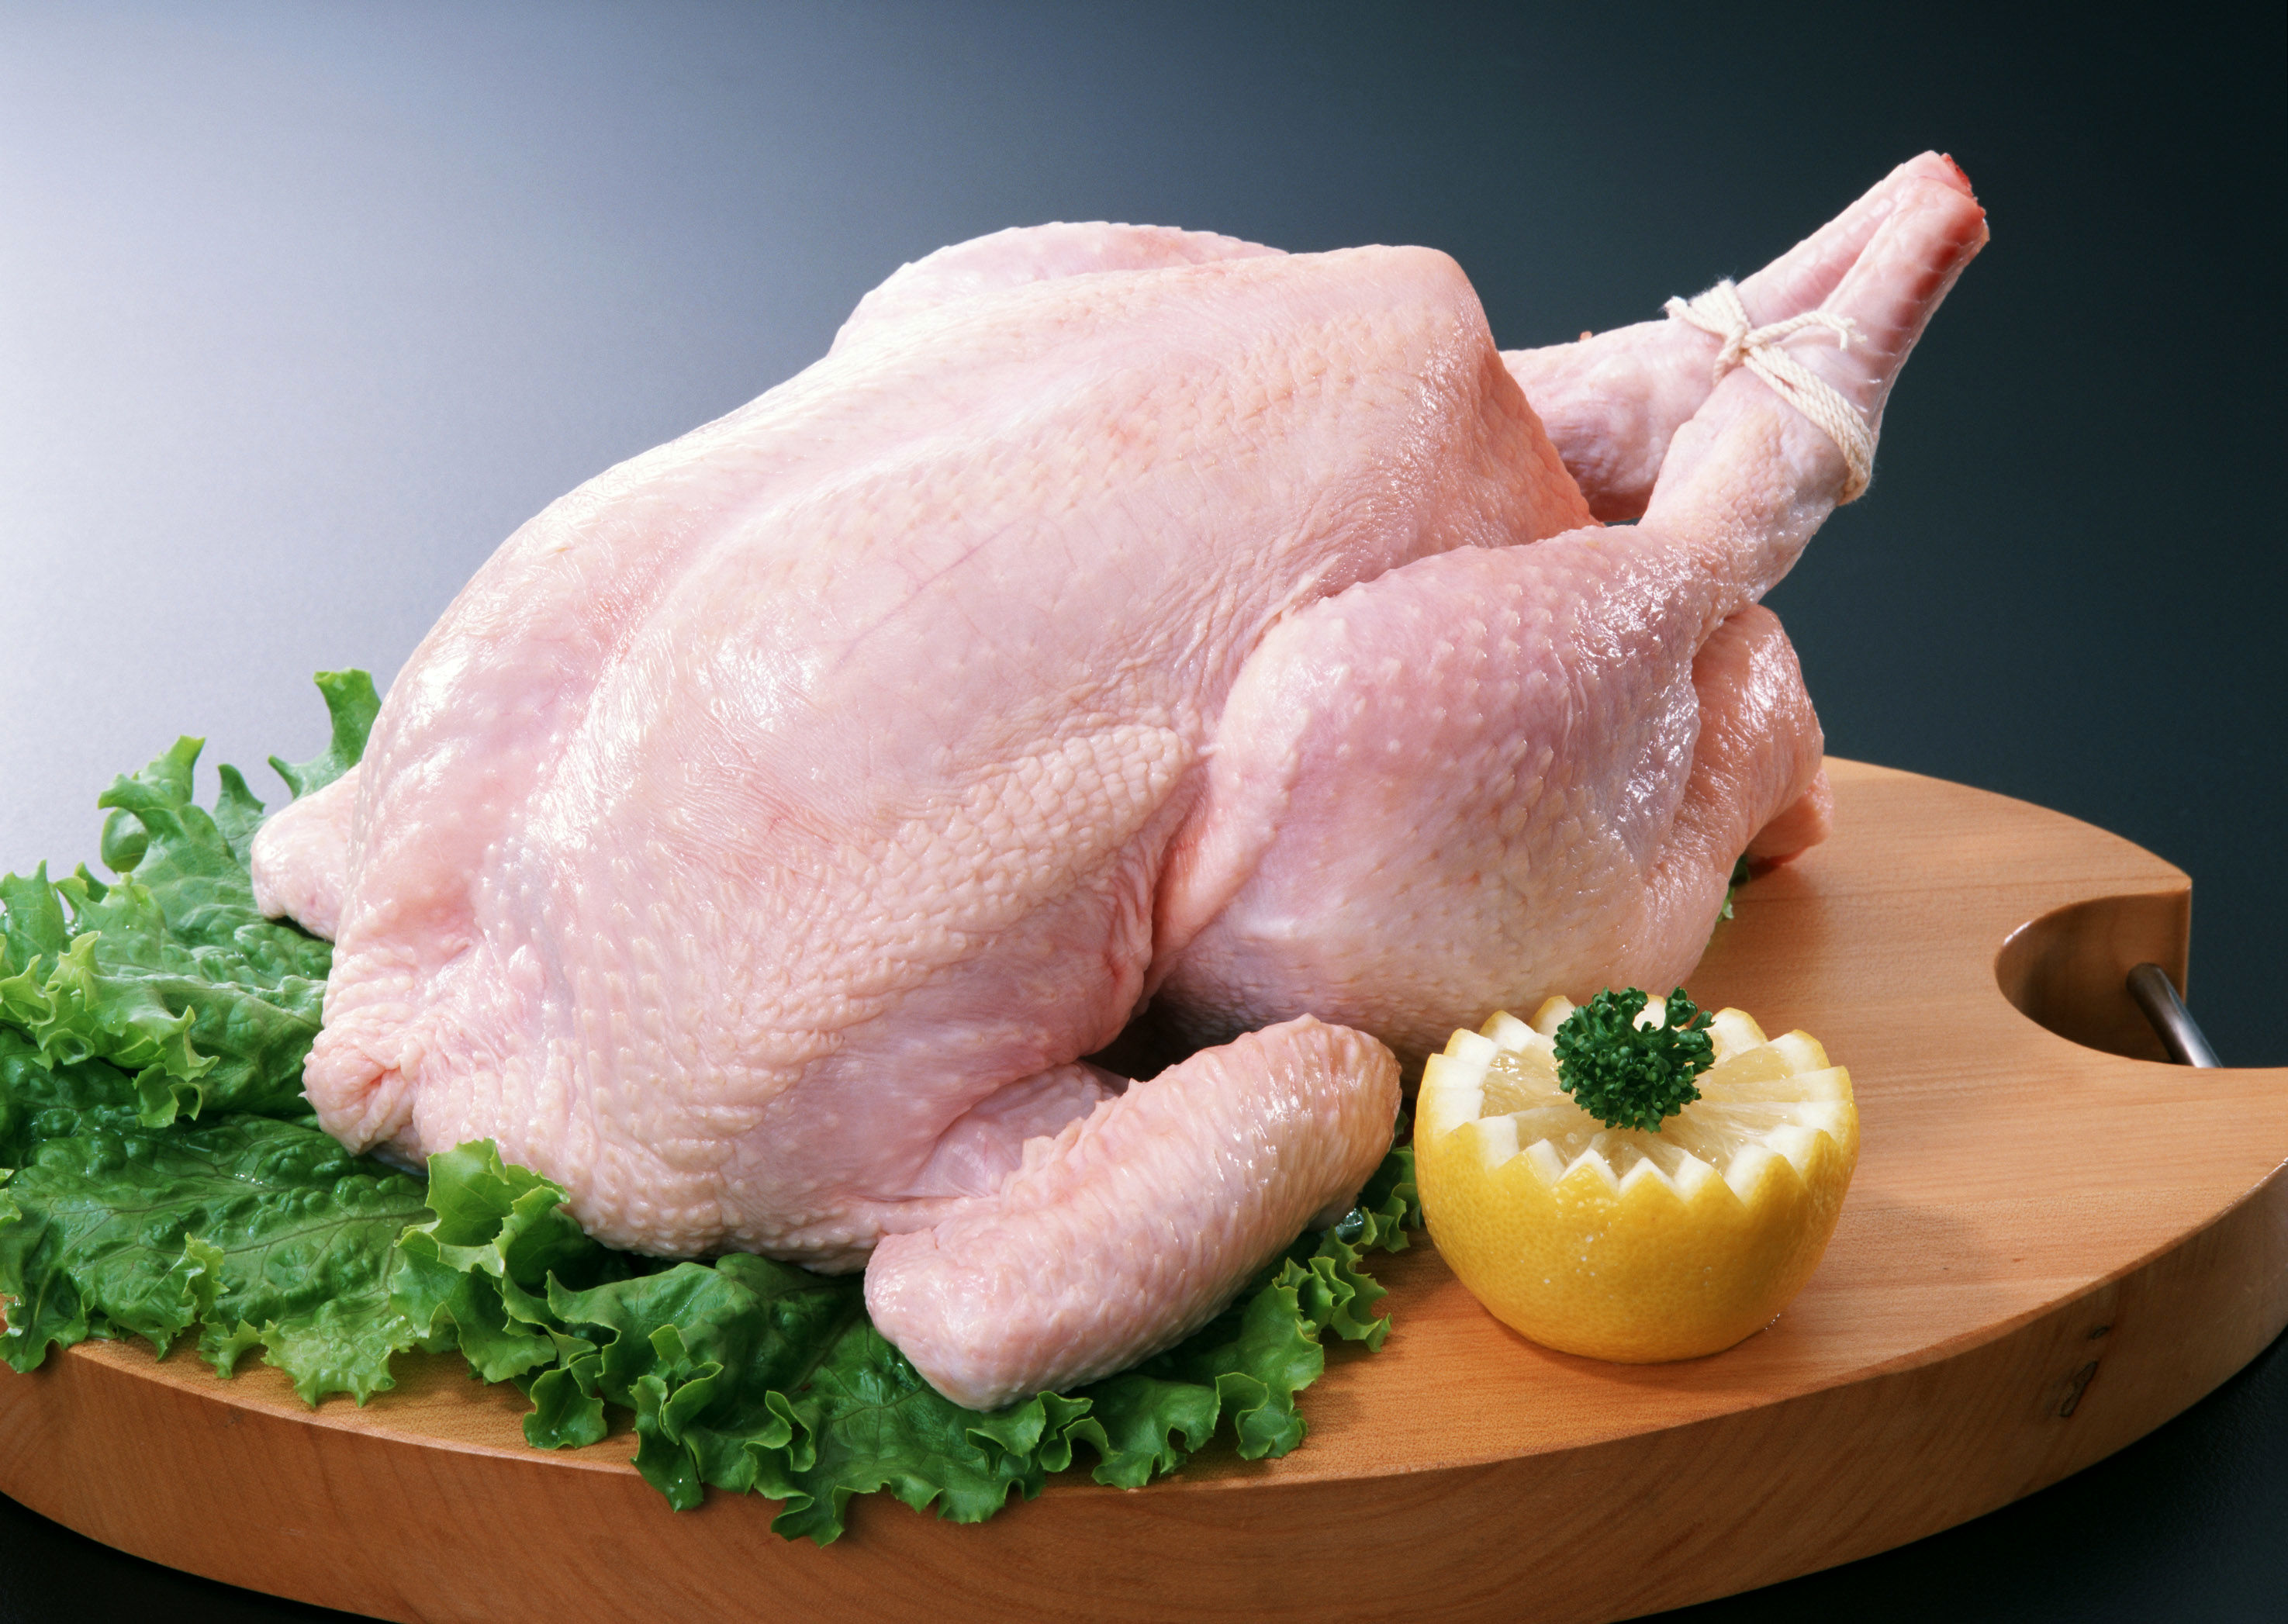 مرغ ها قصد پرواز ندارند/مرغ هر کیلو گرم 6 هزار و350 تومان